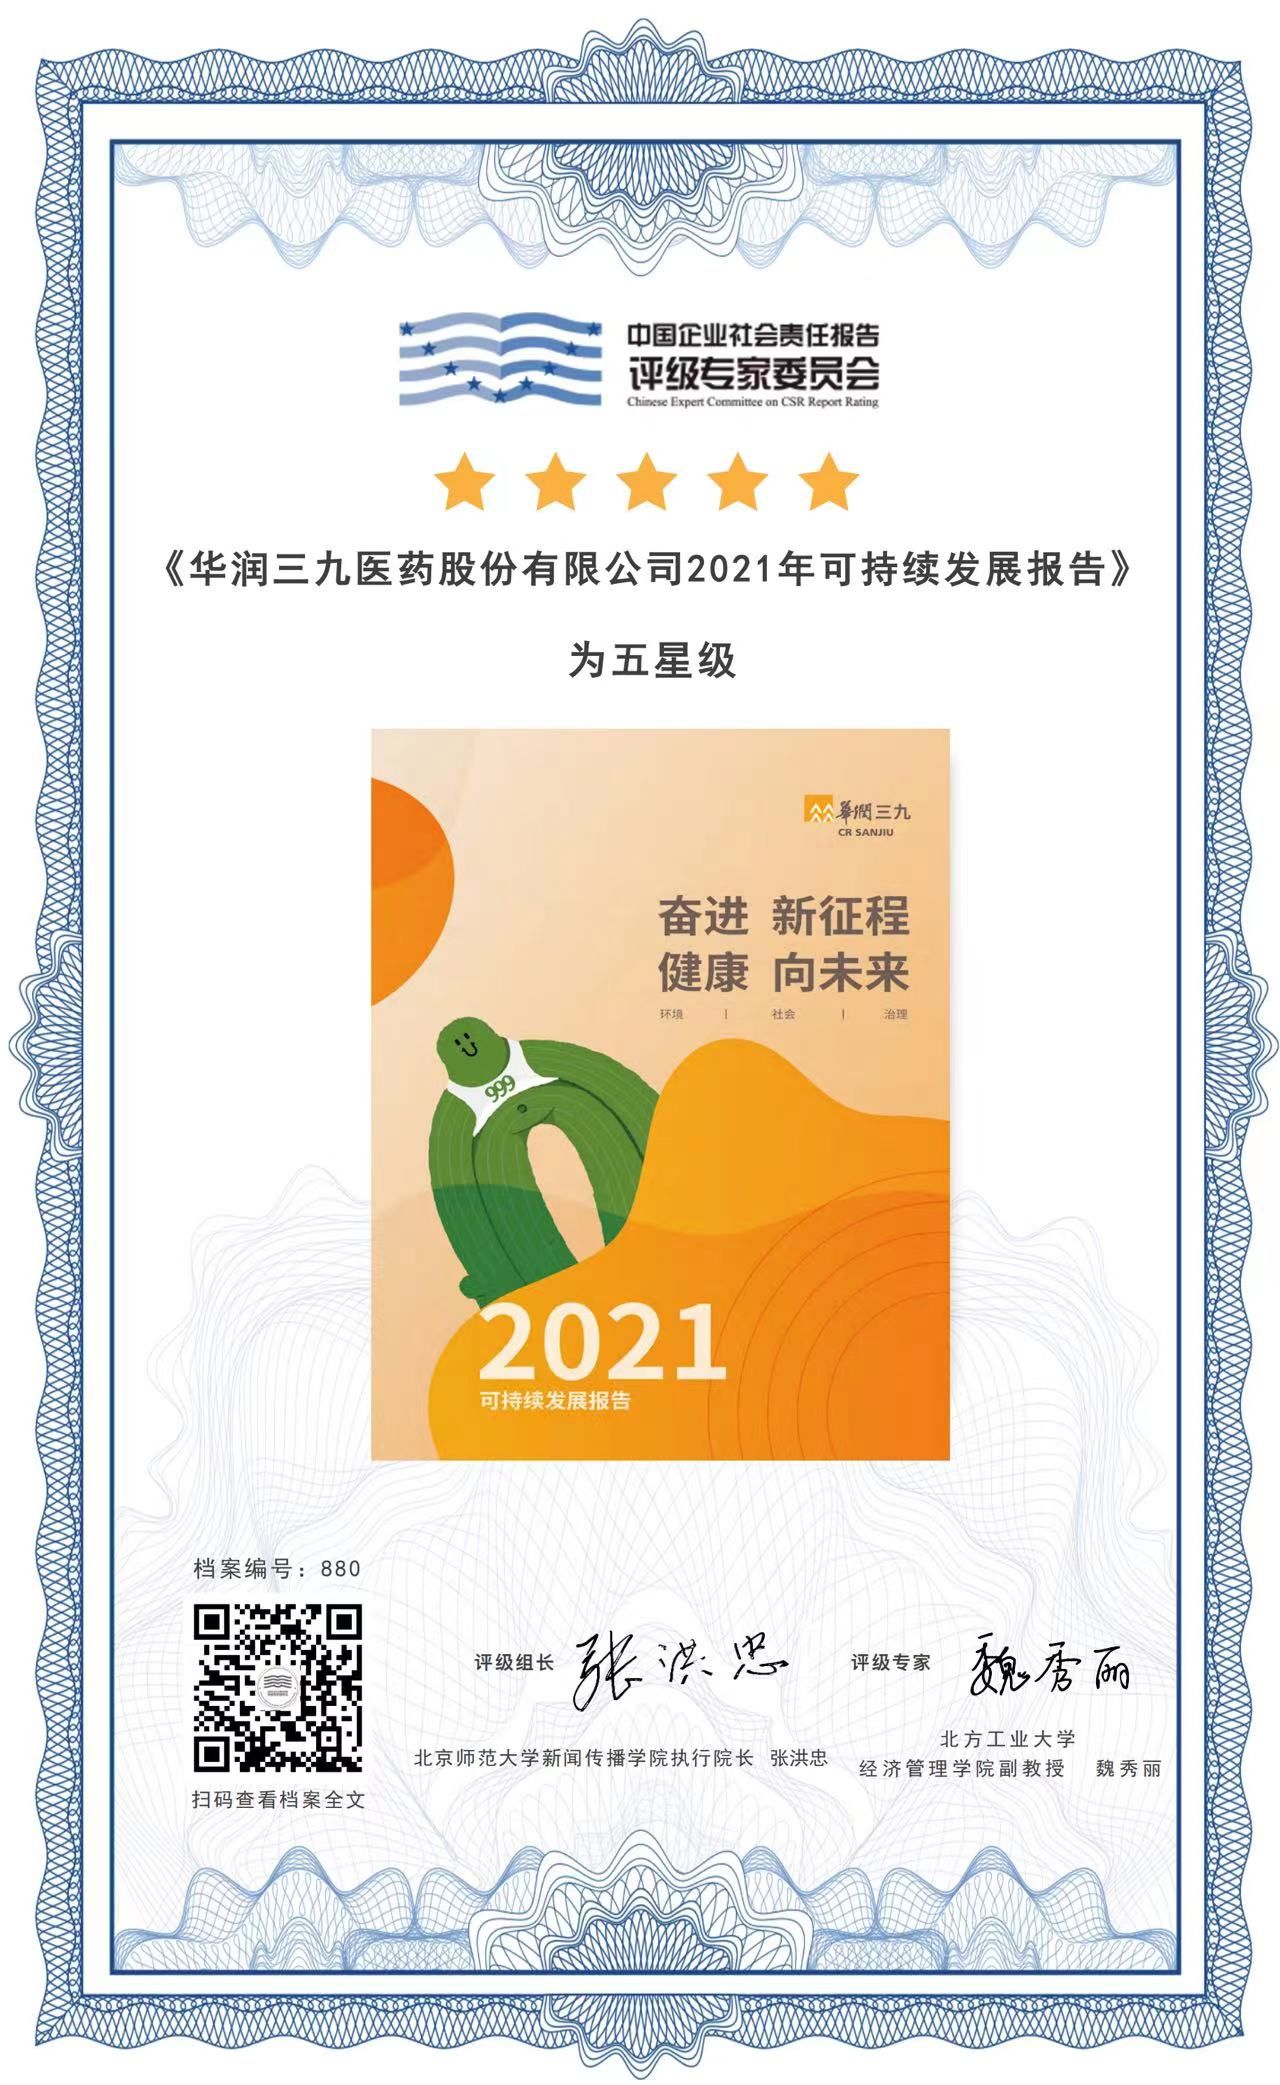 華潤三九可持續發展報告連續第二年獲得“五星級”評價